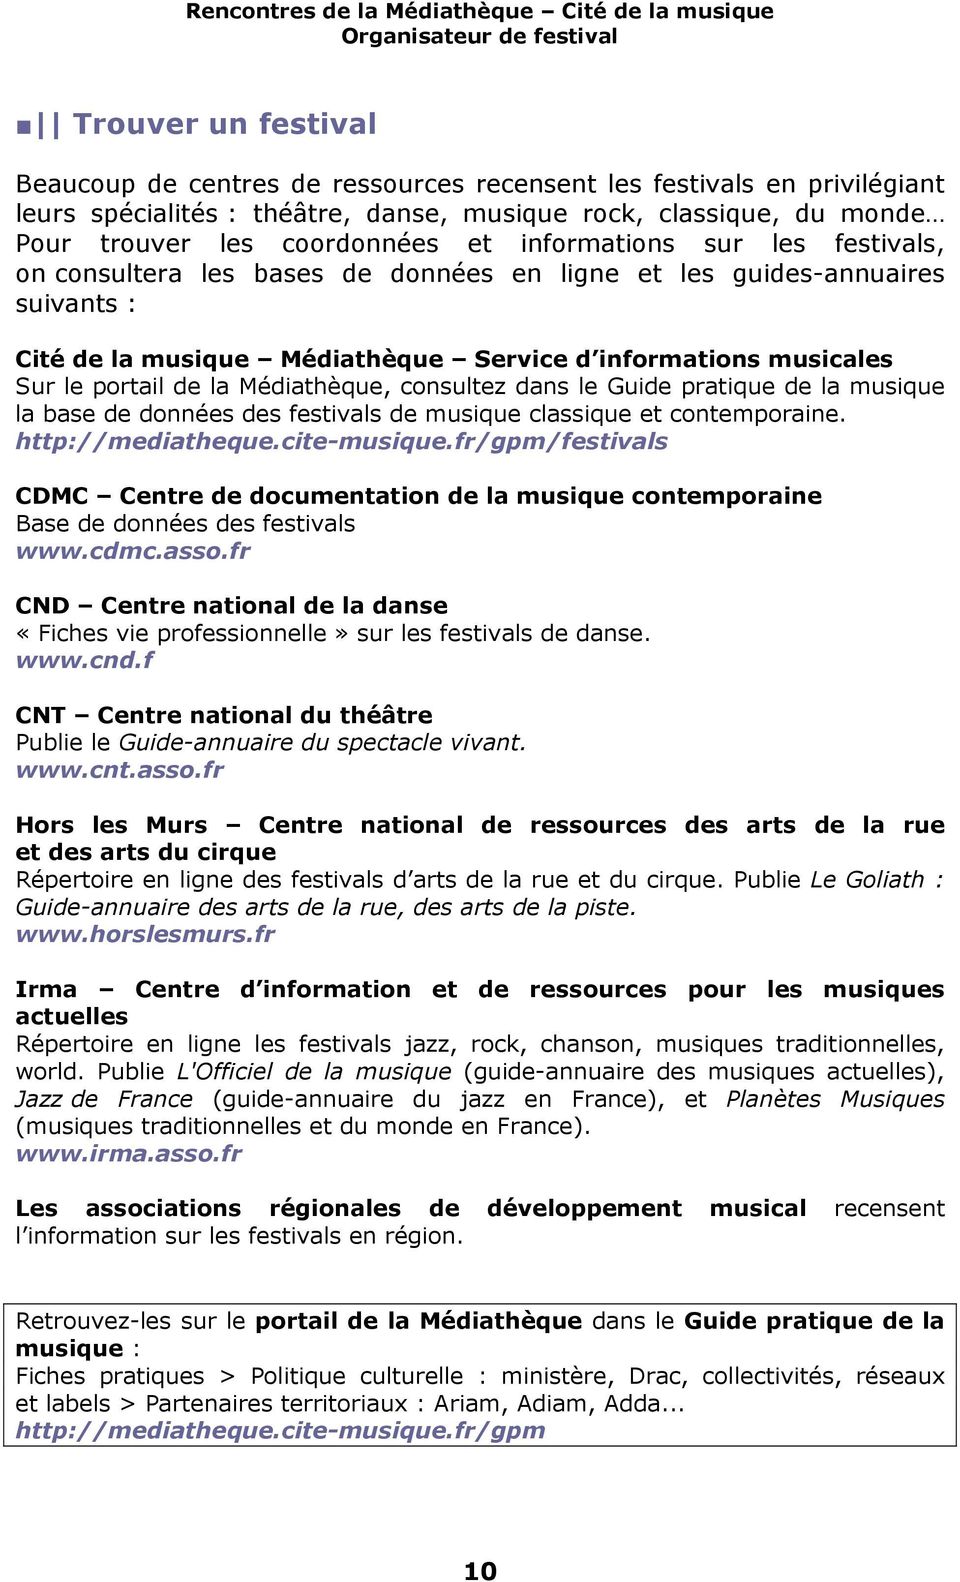 Médiathèque, consultez dans le Guide pratique de la musique la base de données des festivals de musique classique et contemporaine. http://mediatheque.cite-musique.